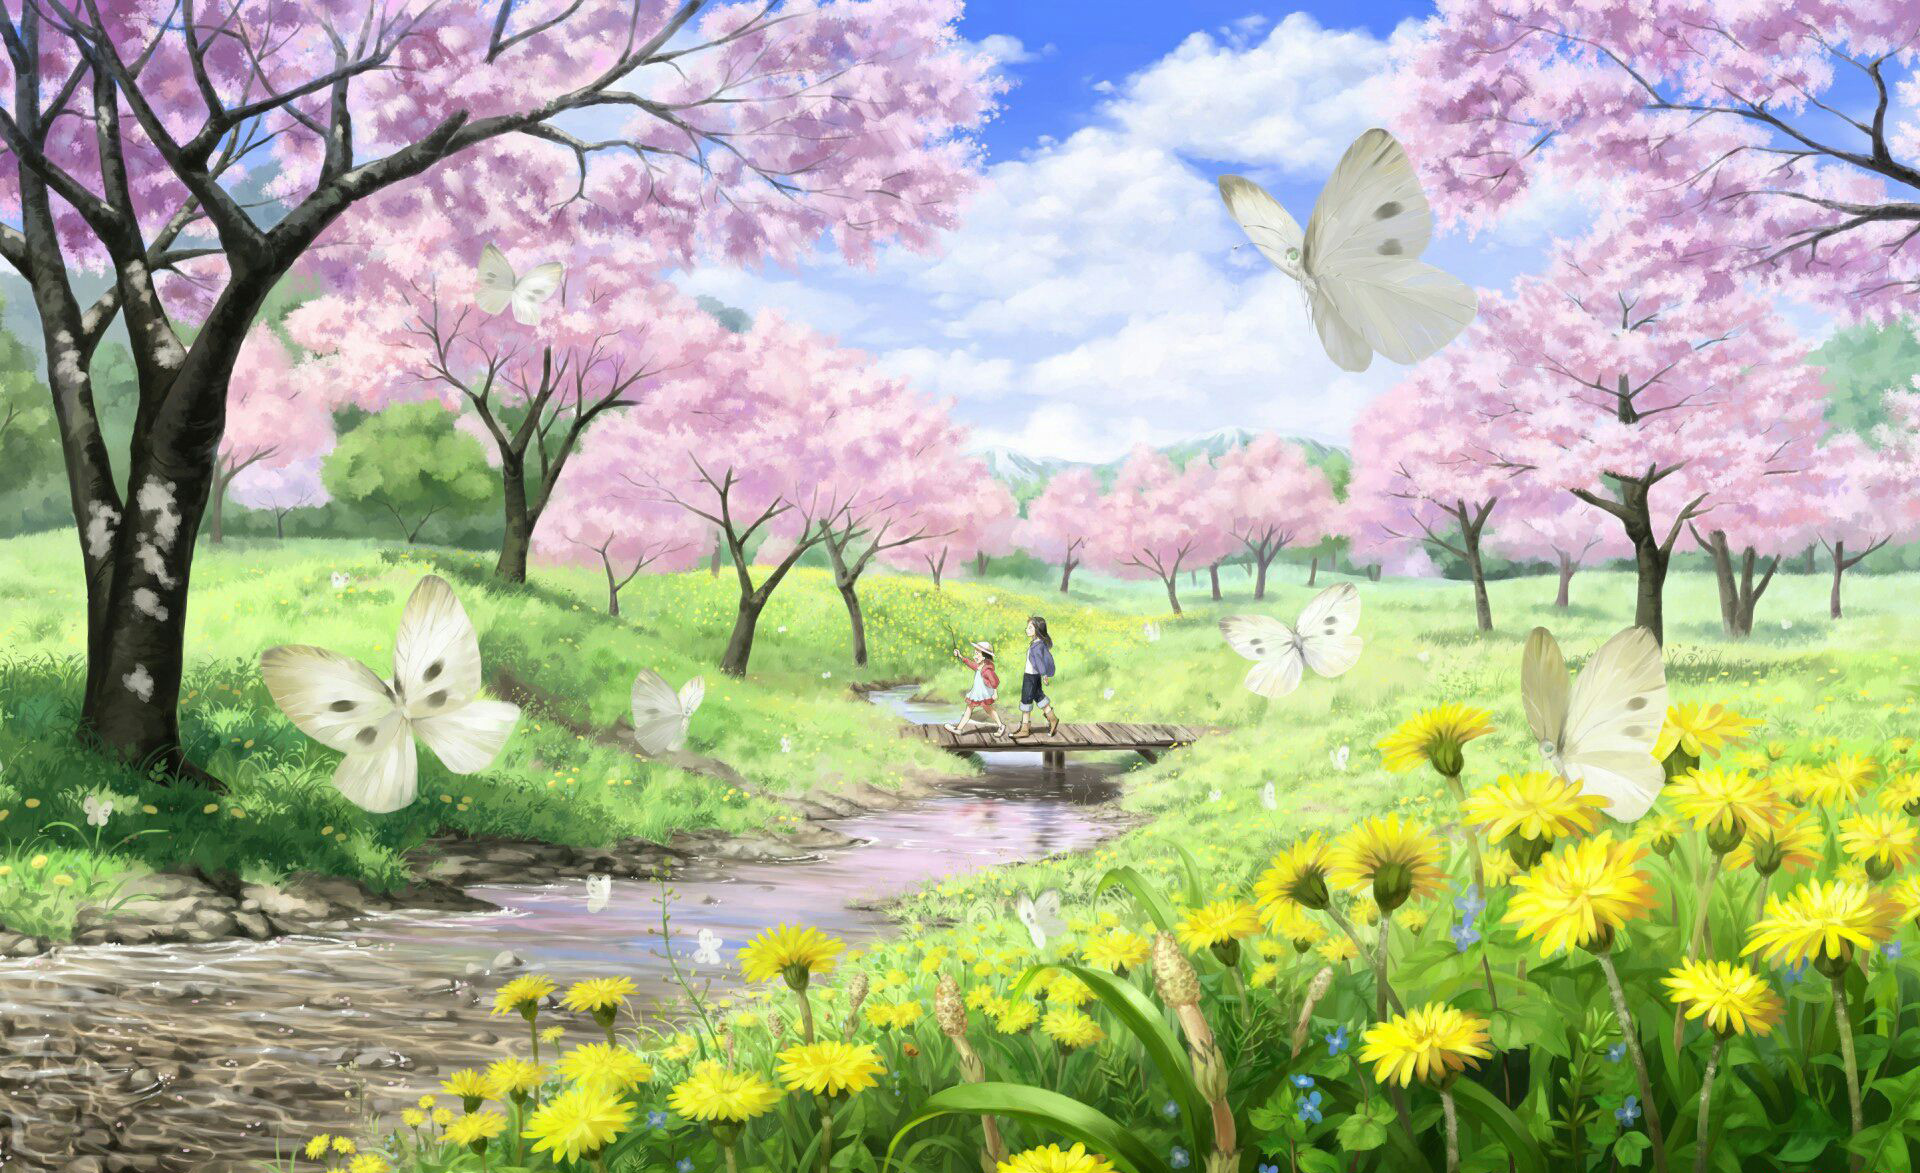 Hình ảnh hoa Anh Đào anime đẹp, lãng mạn, dễ thương nhất